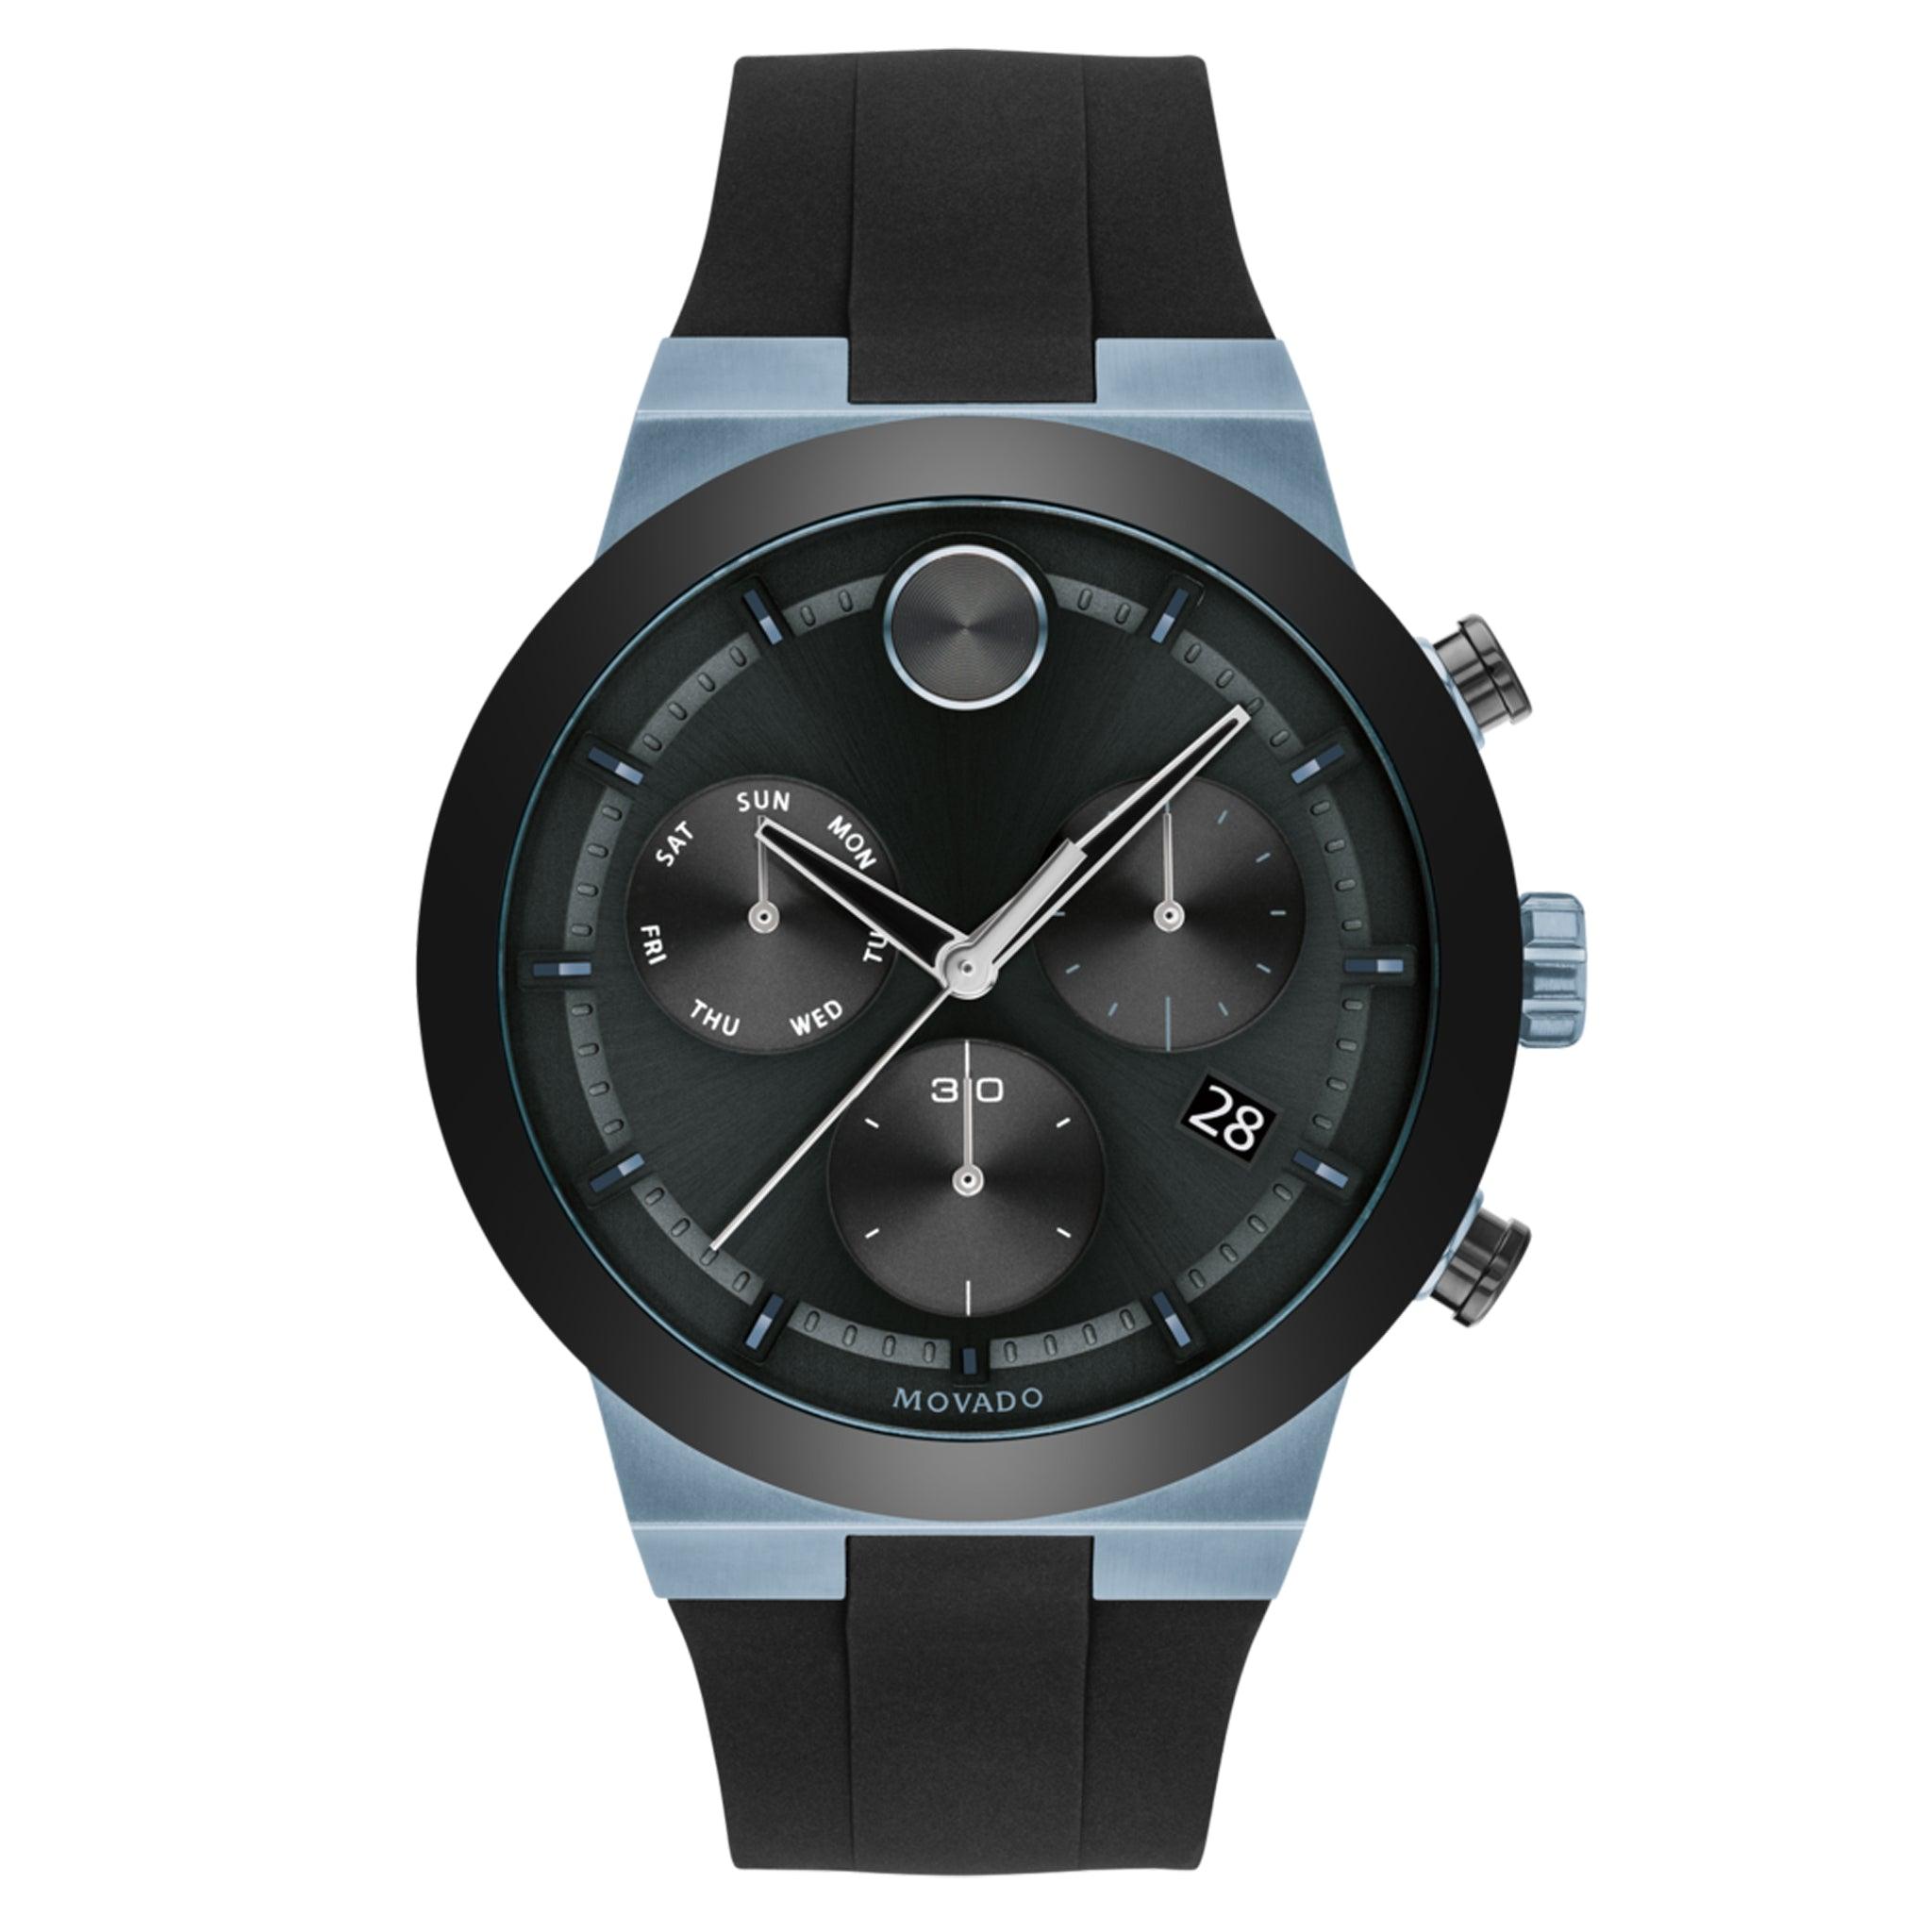 ساعة موفادو بولد فيوجن كوارتز سويسرية كاجوال بهيكل ستانلس ستيل أزرق وحزام سيليكون  Movado 3600713 Bold Fusion Men's Quartz Stainless Steel And Silicone Strap Casual Watch, Blue